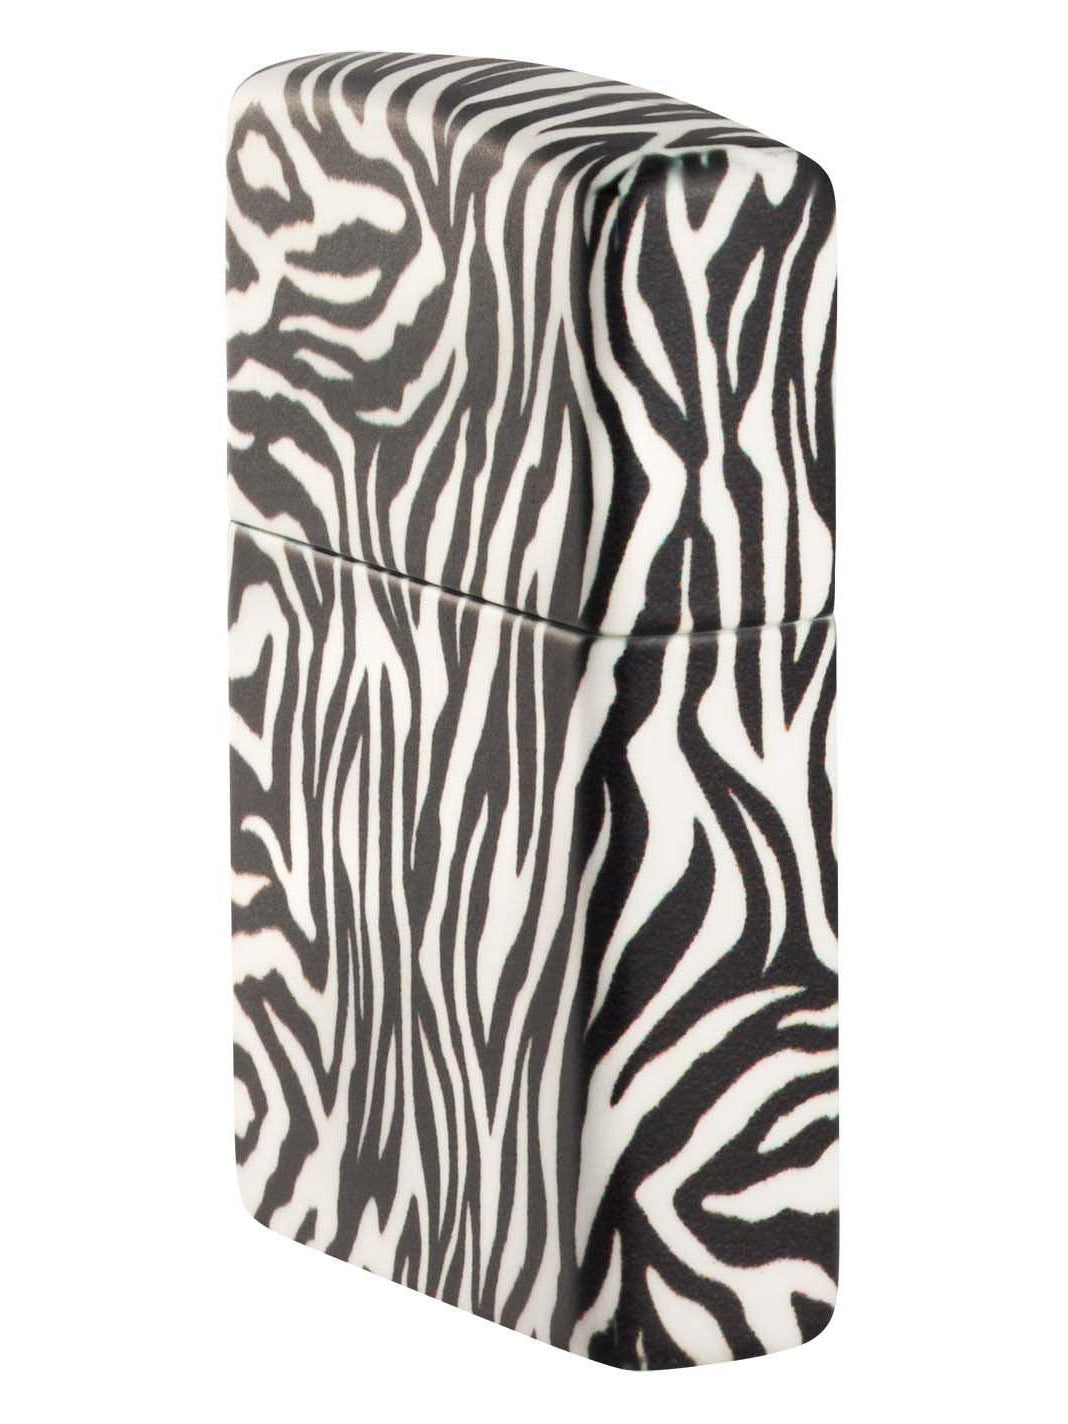 Zippo Lighter: Zebra Print - 540 Color 48223